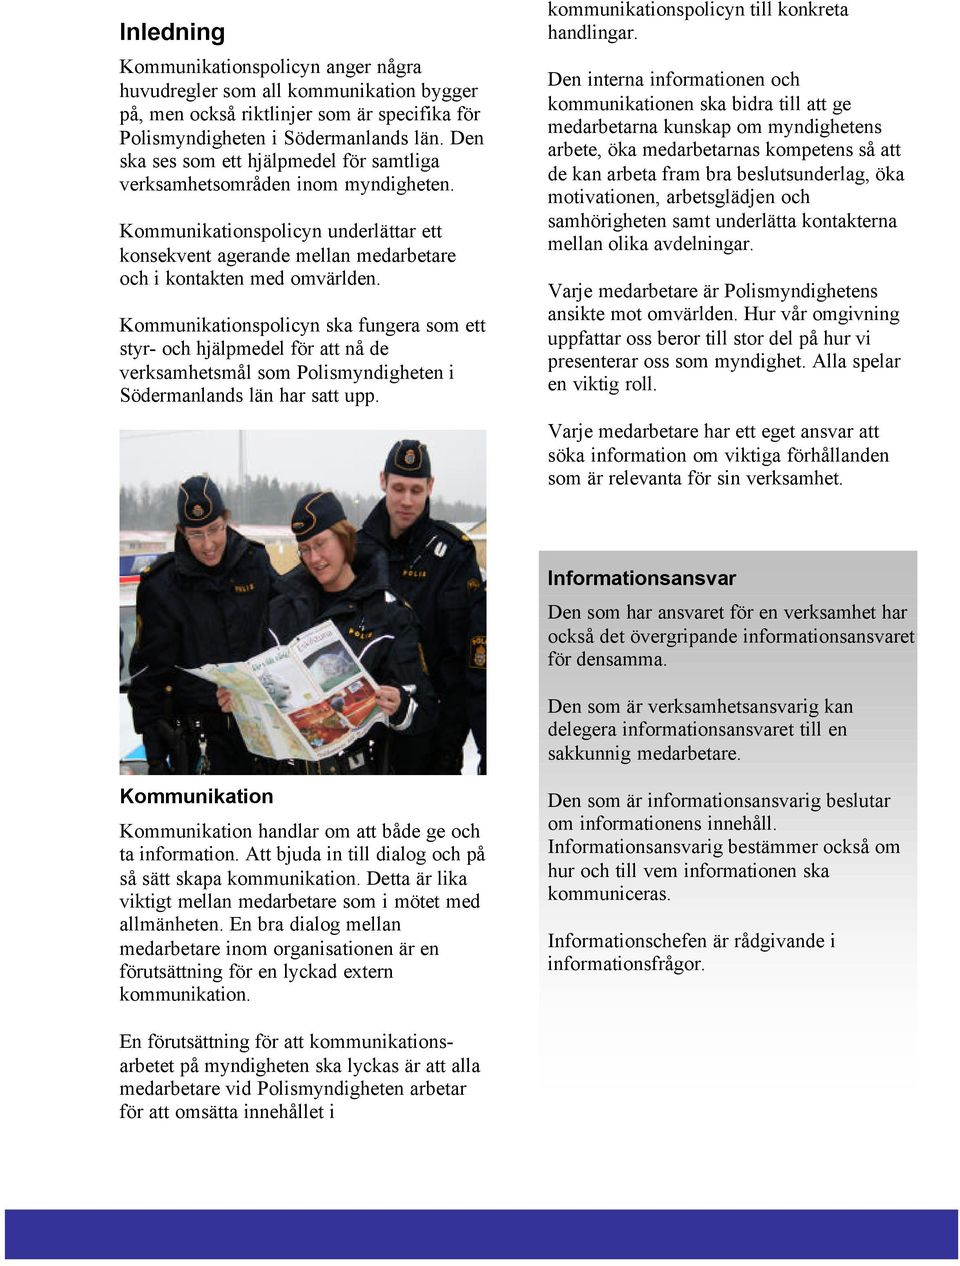 Kommunikationspolicyn ska fungera som ett styr- och hjälpmedel för att nå de verksamhetsmål som Polismyndigheten i Södermanlands län har satt upp. kommunikationspolicyn till konkreta handlingar.